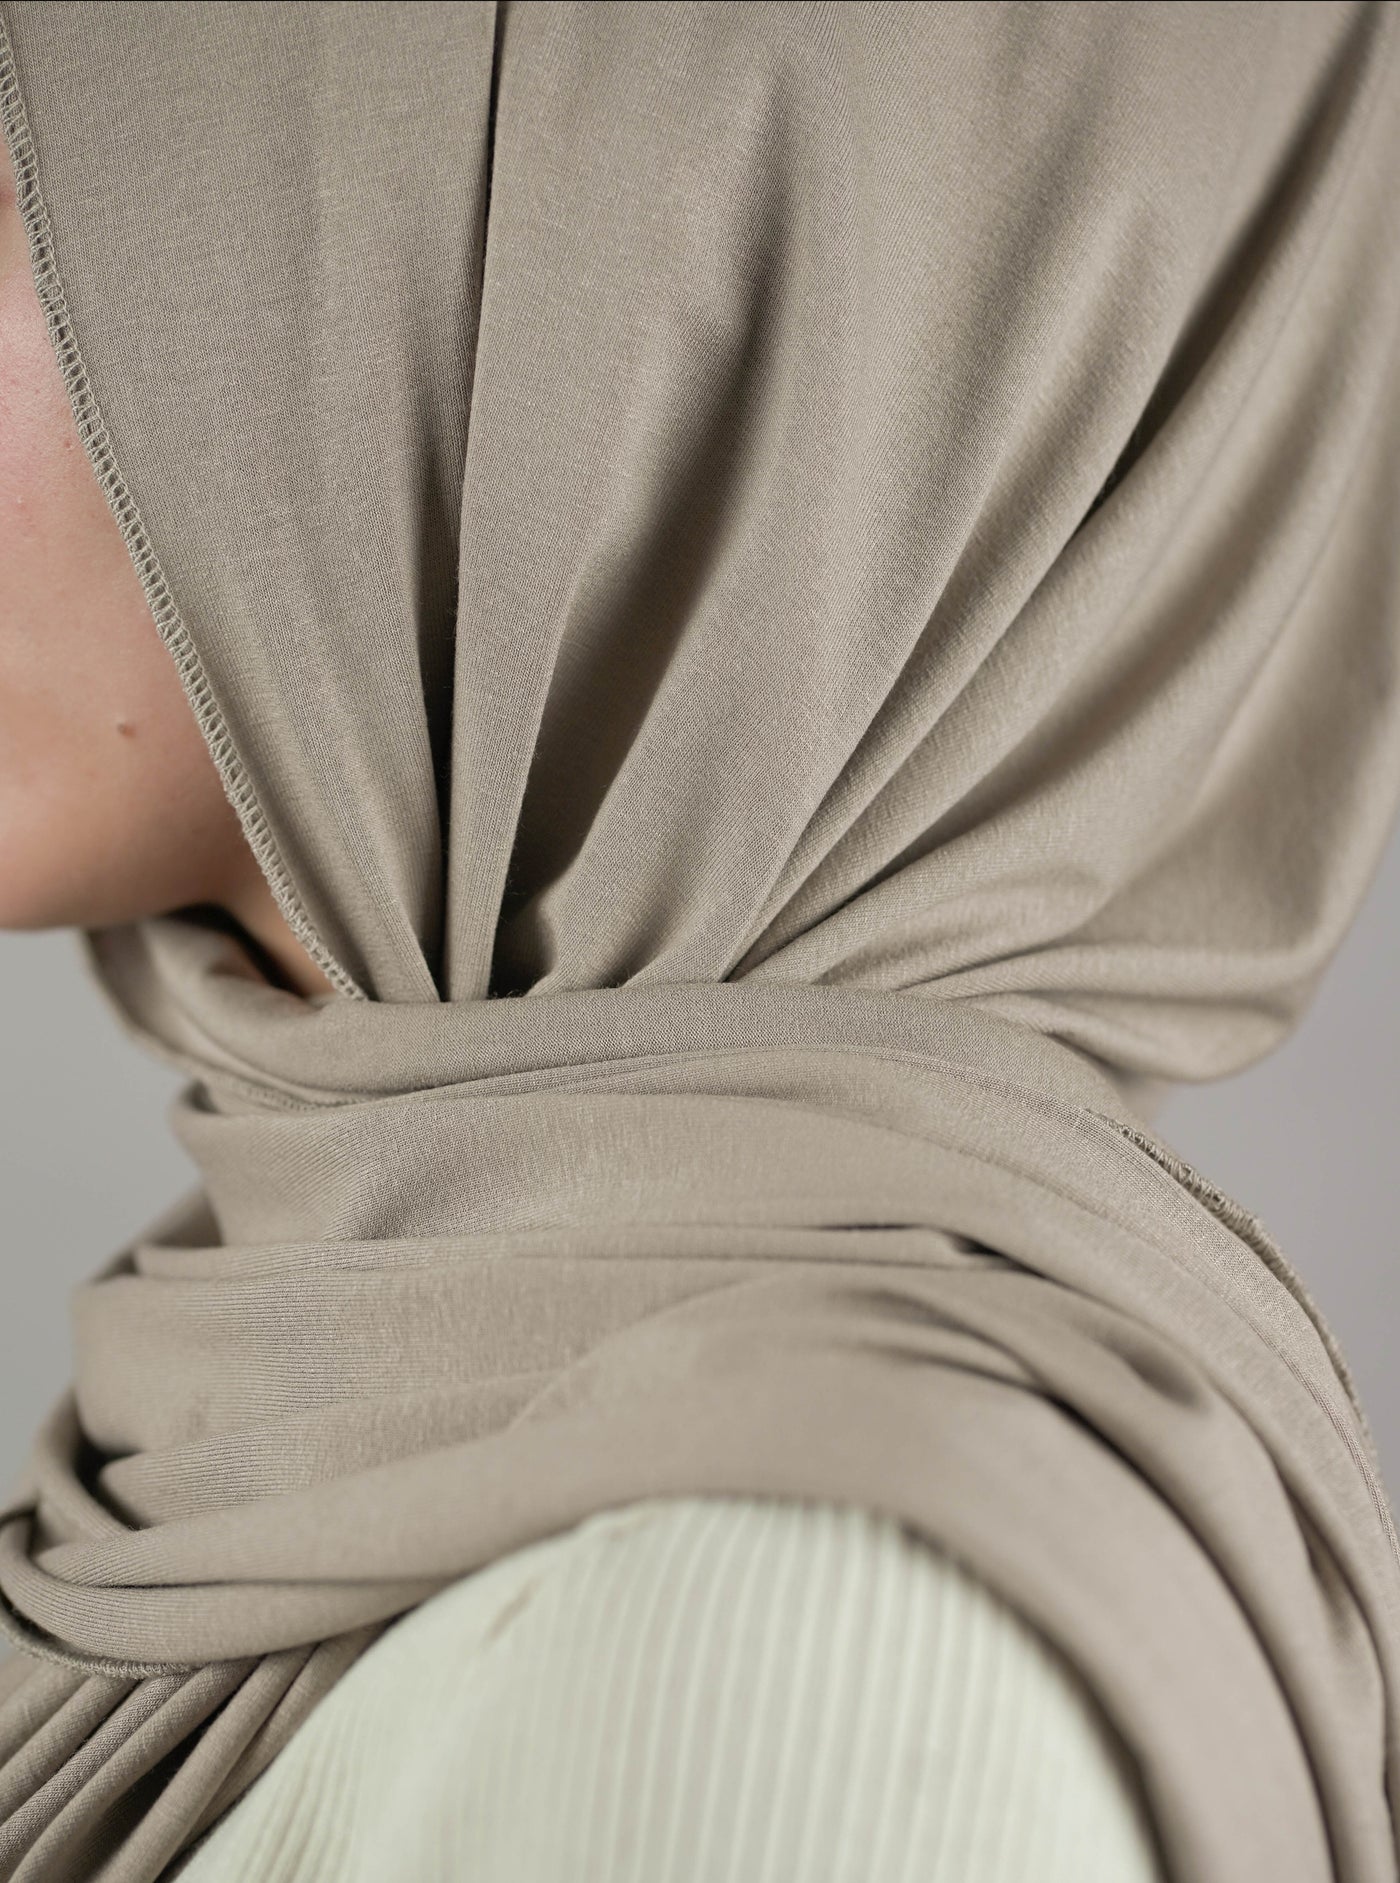 Ultra-soft Jersey Hijab - taupe